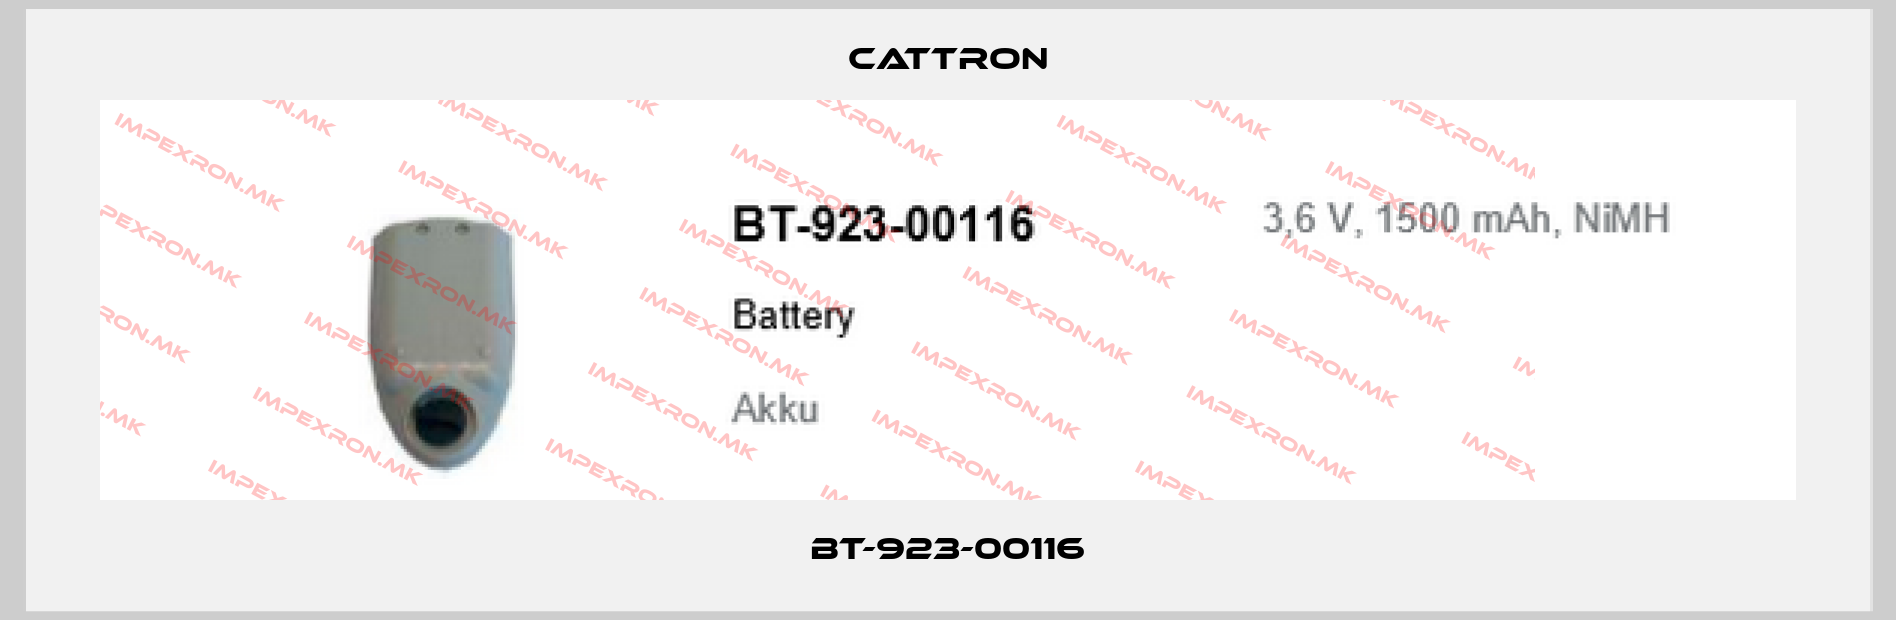 Cattron-BT-923-00116price